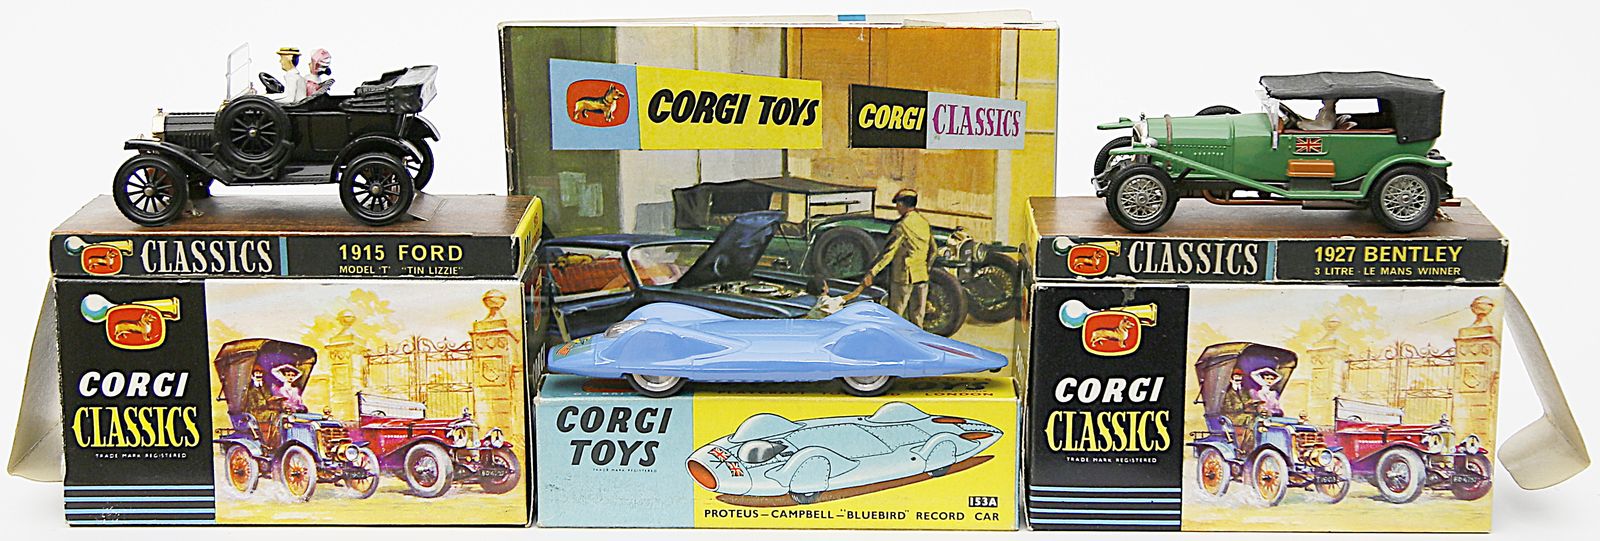 3 Spielzeugautos, Corgi Toys.